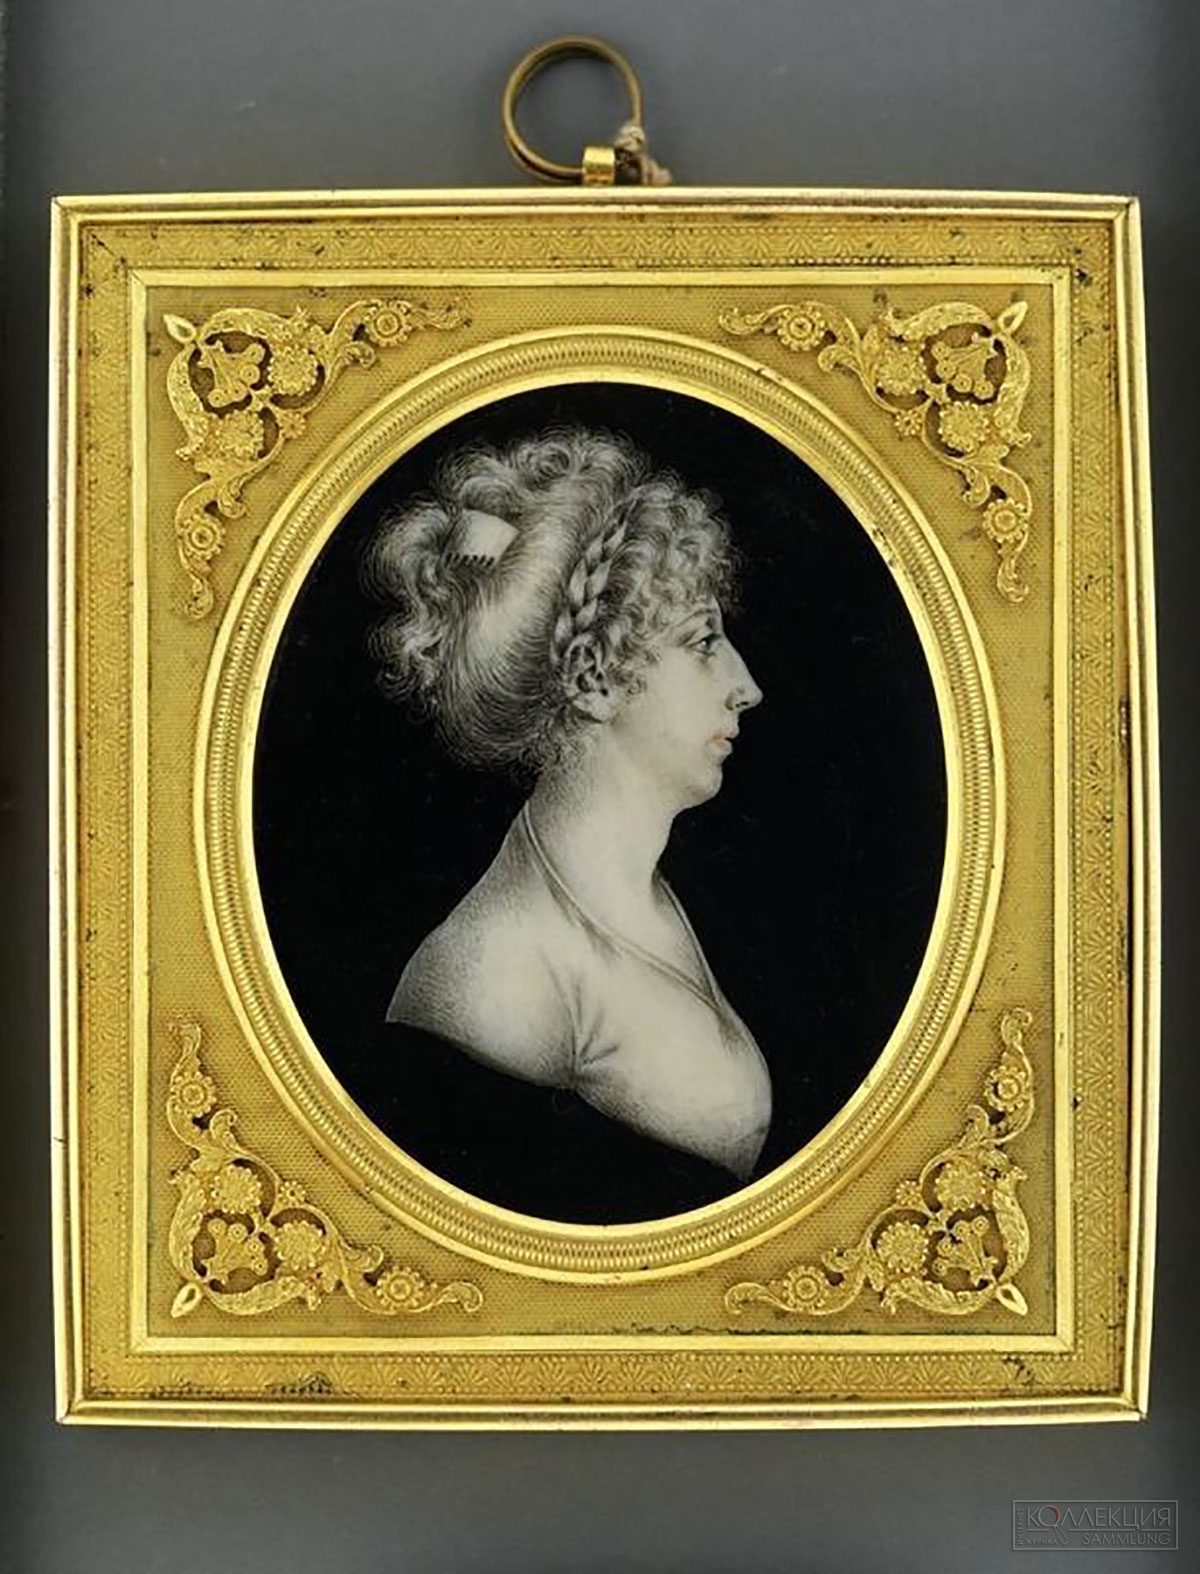 Рокштуль П.Э. 1764-1824. Портрет неизвестной с гребнем в волосах. Начало 1800-х. Третьяковская галерея